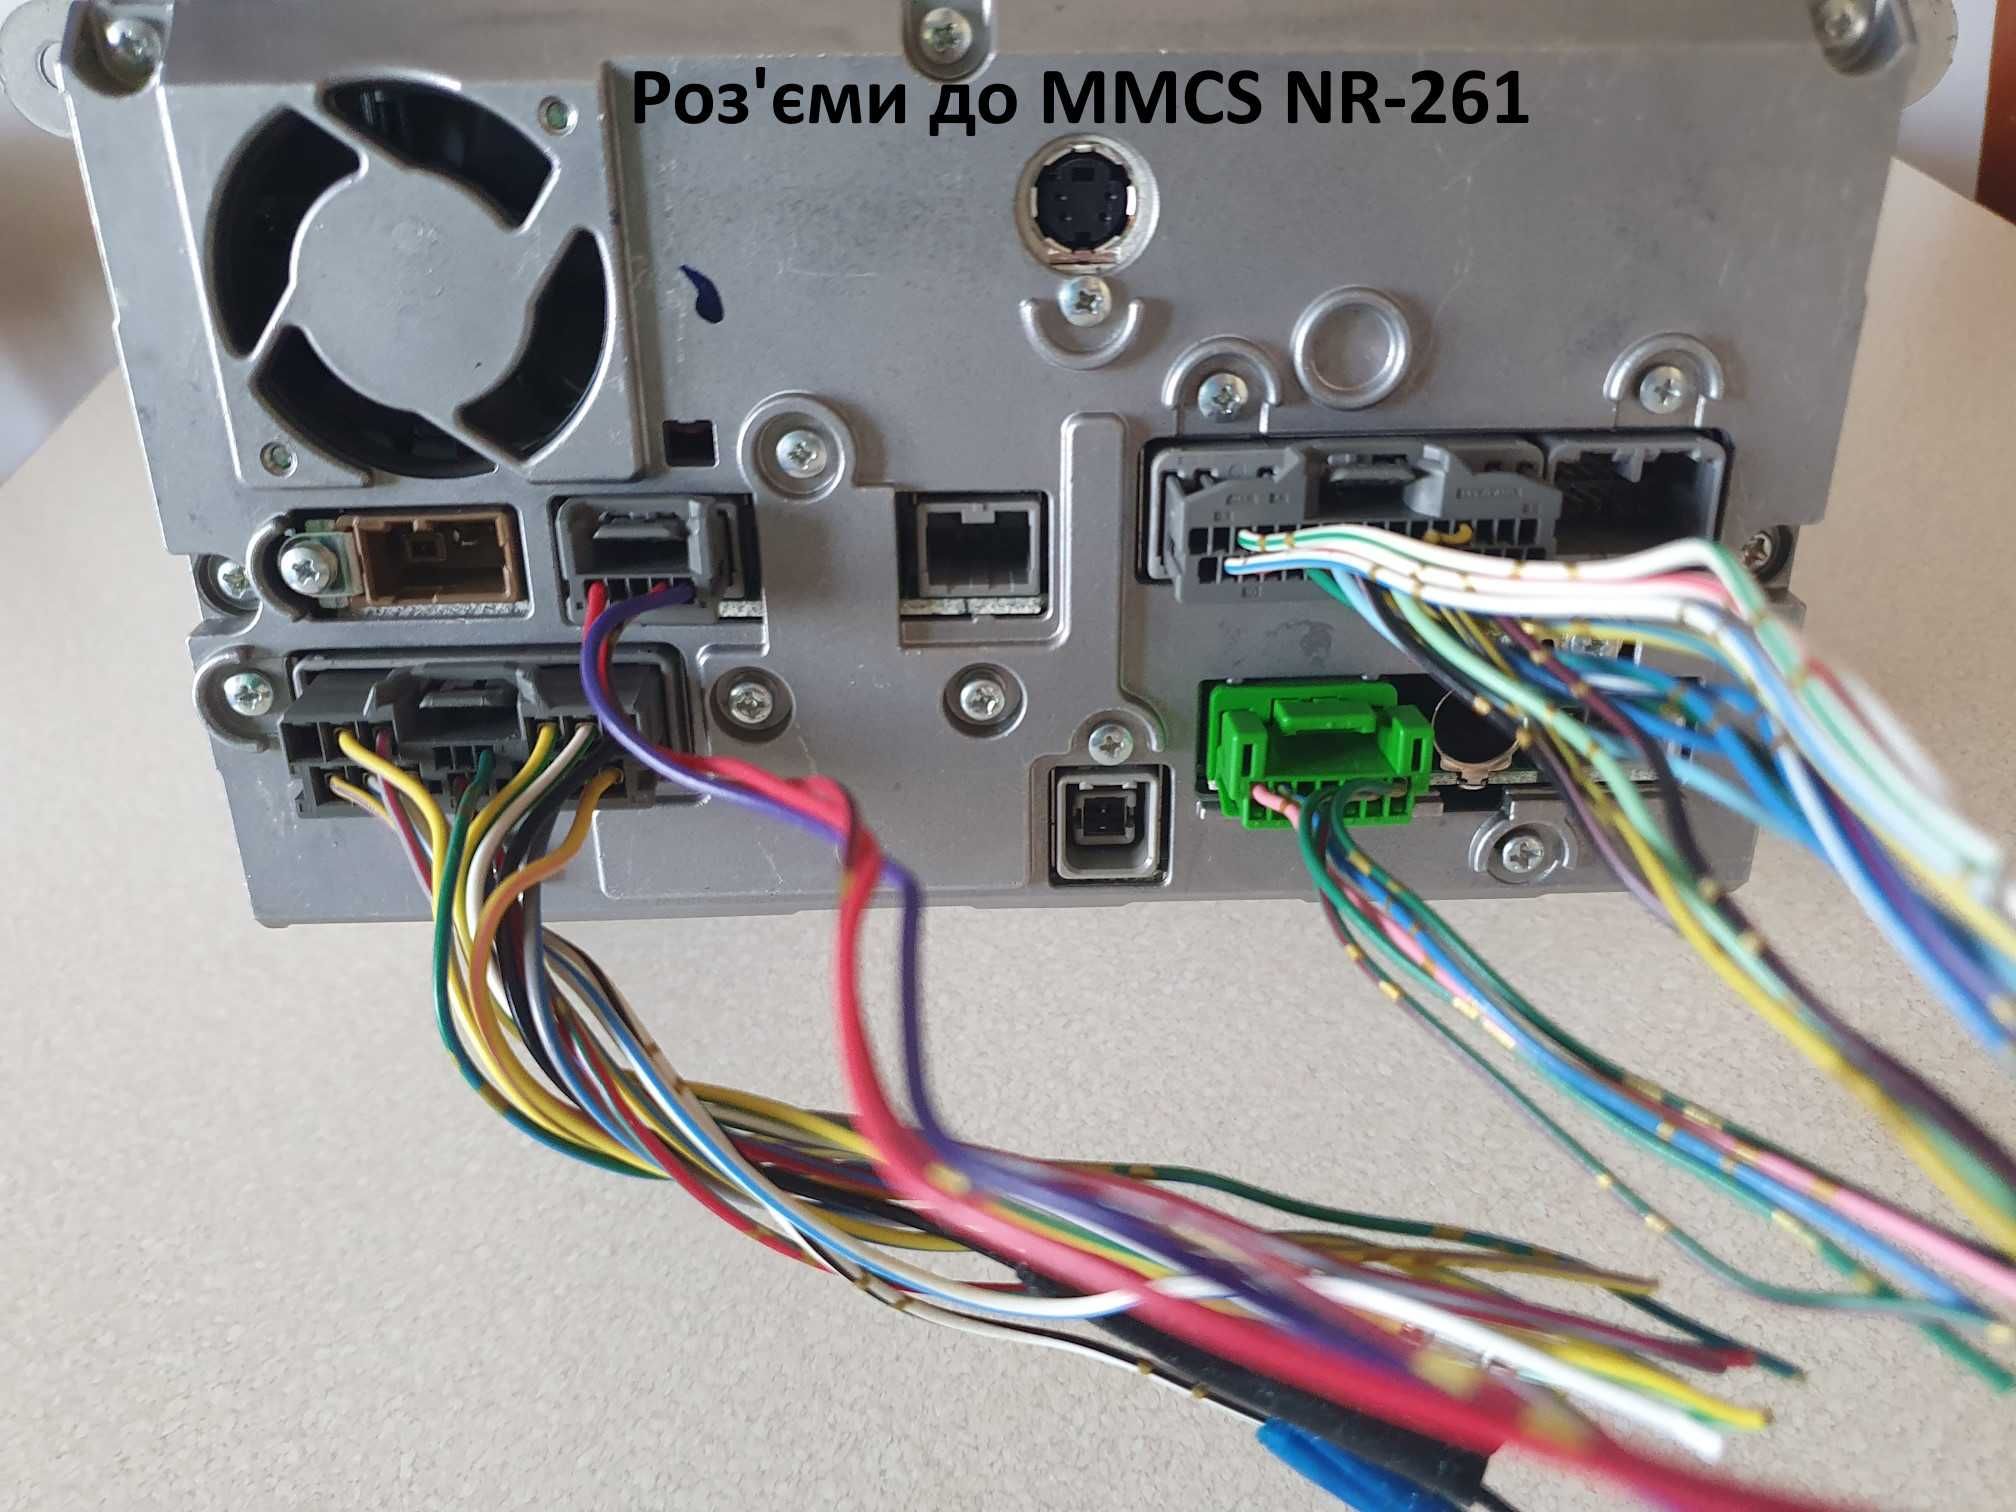 Роз'єми до MMCS NR-242, NR-261, Mitsubishi SDA, камера, USB, CAN-BOX